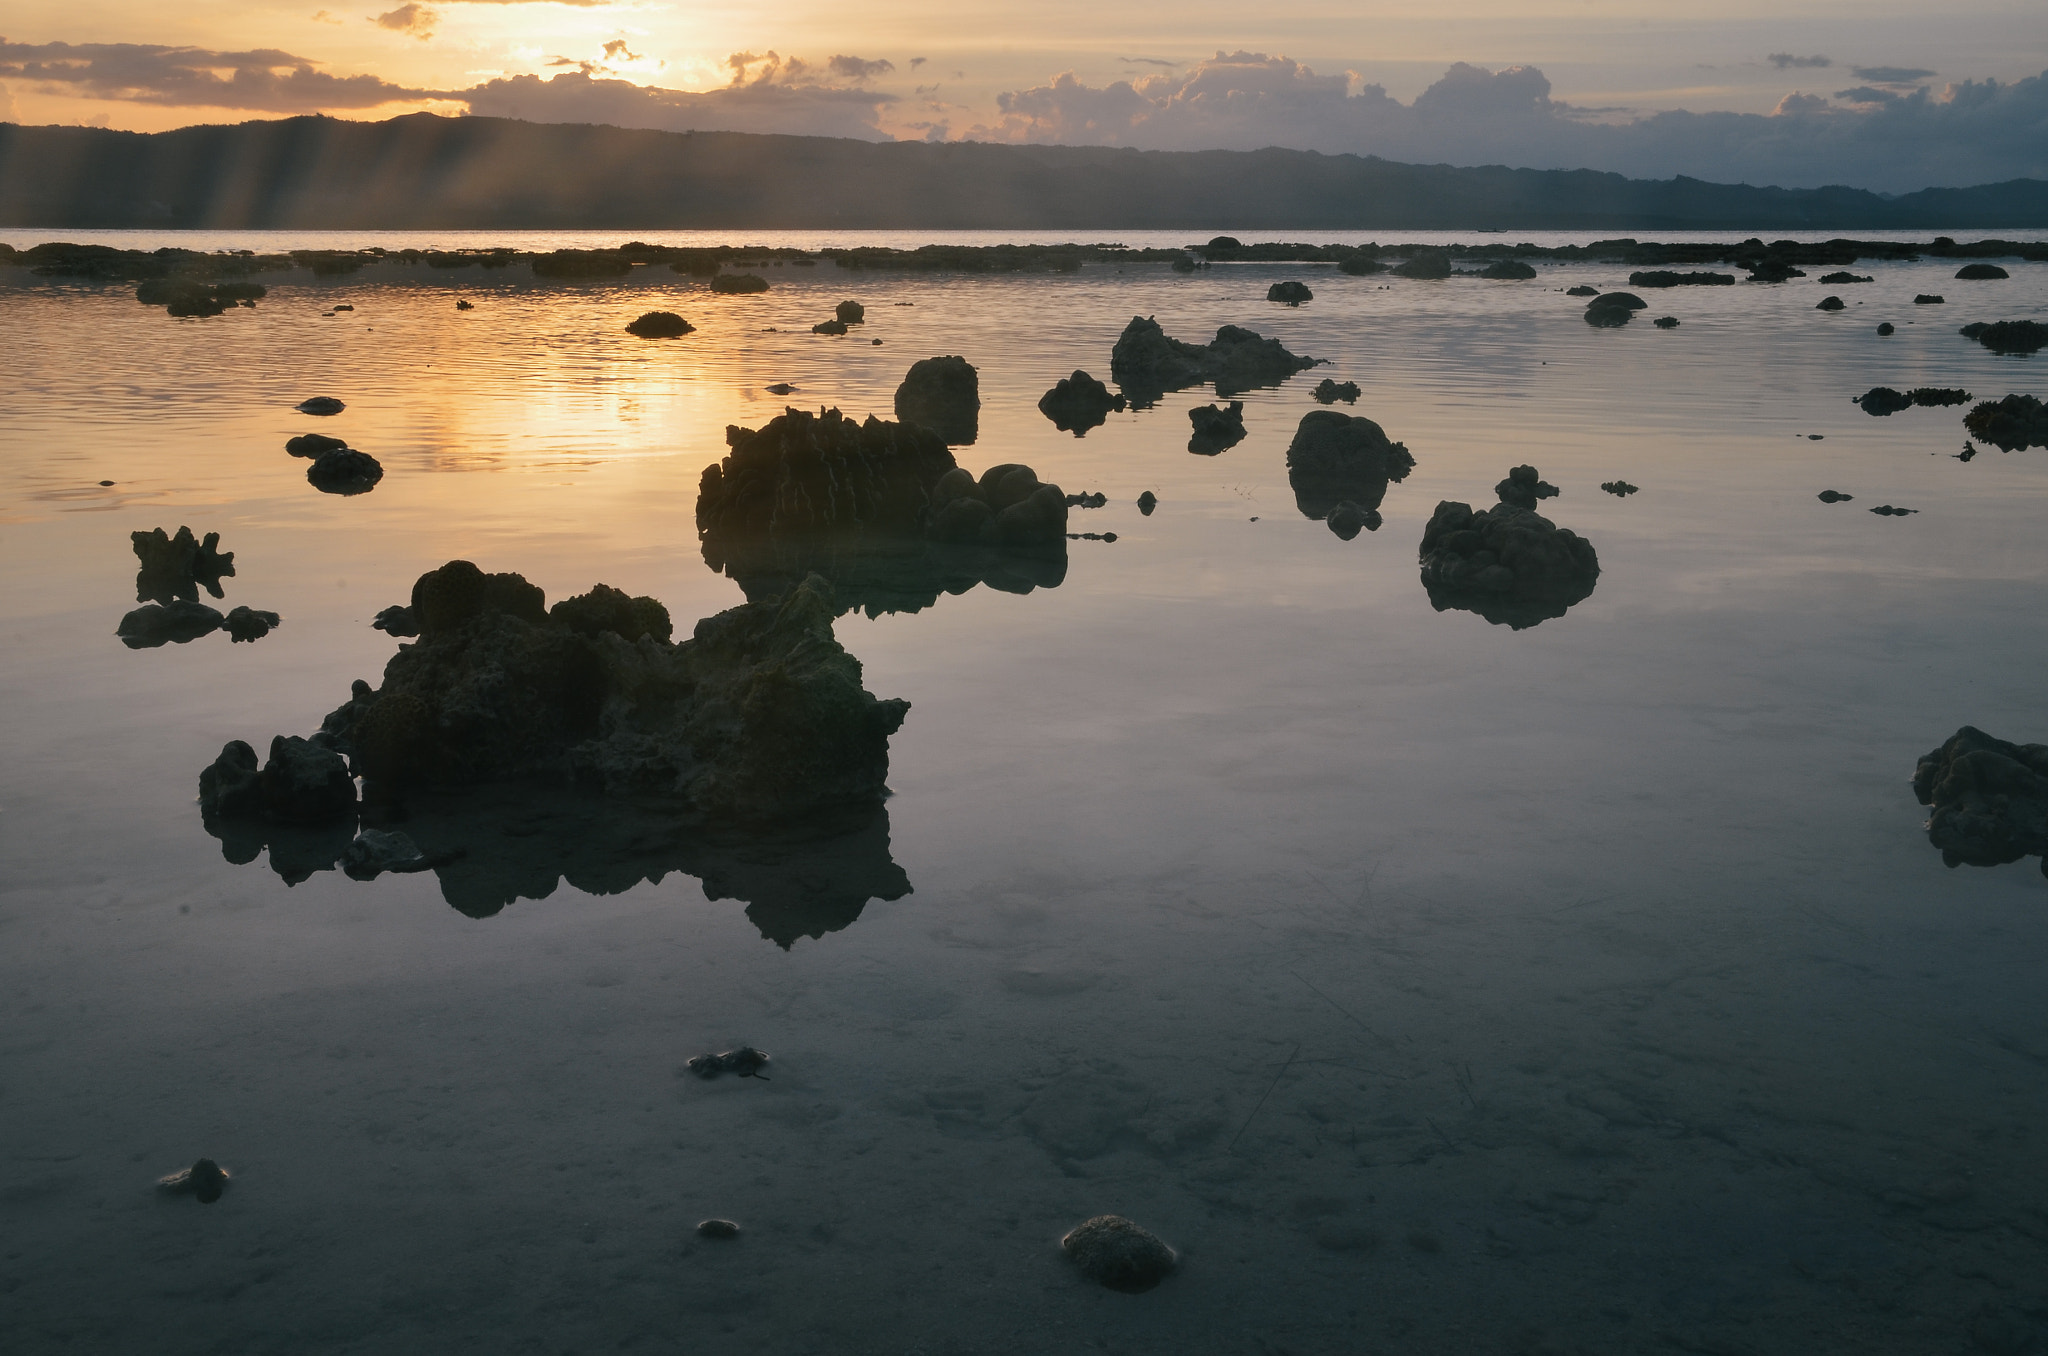 Nikon D7000 + Sigma 17-70mm F2.8-4 DC Macro OS HSM | C sample photo. Alibijaban island sunset photography